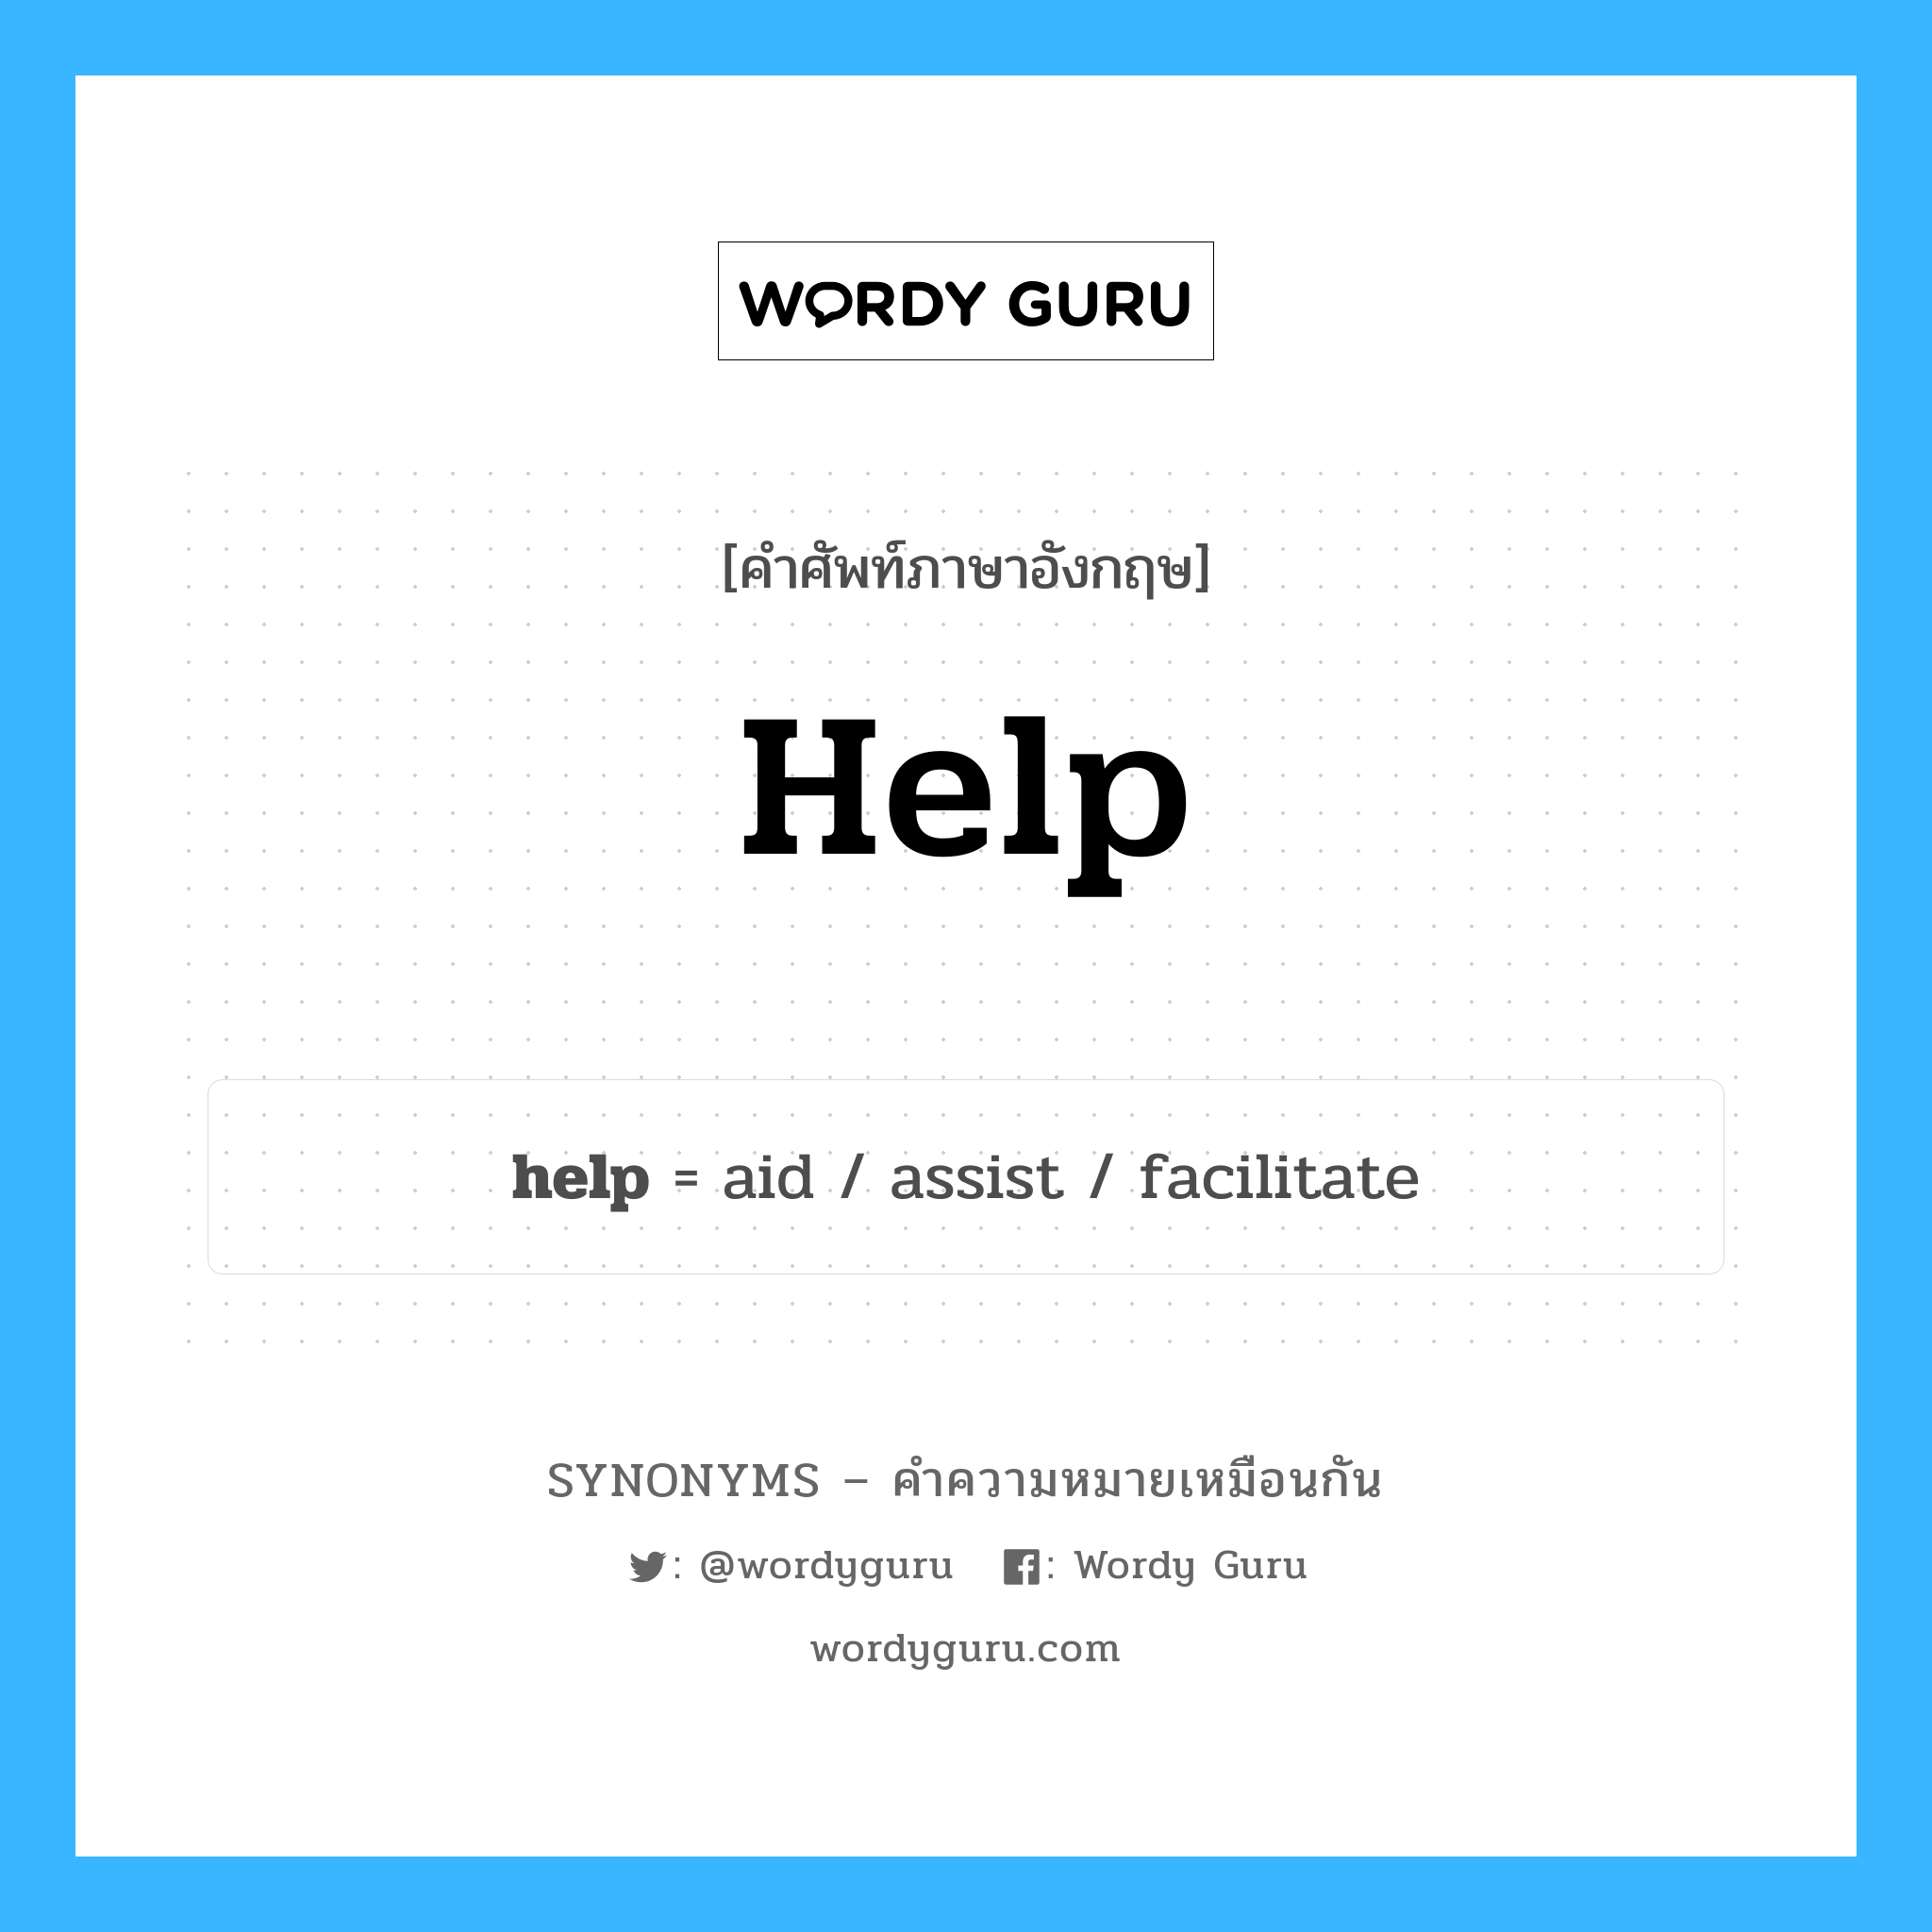 assist เป็นหนึ่งใน help และมีคำอื่น ๆ อีกดังนี้, คำศัพท์ภาษาอังกฤษ assist ความหมายคล้ายกันกับ help แปลว่า ให้ความช่วยเหลือ หมวด help